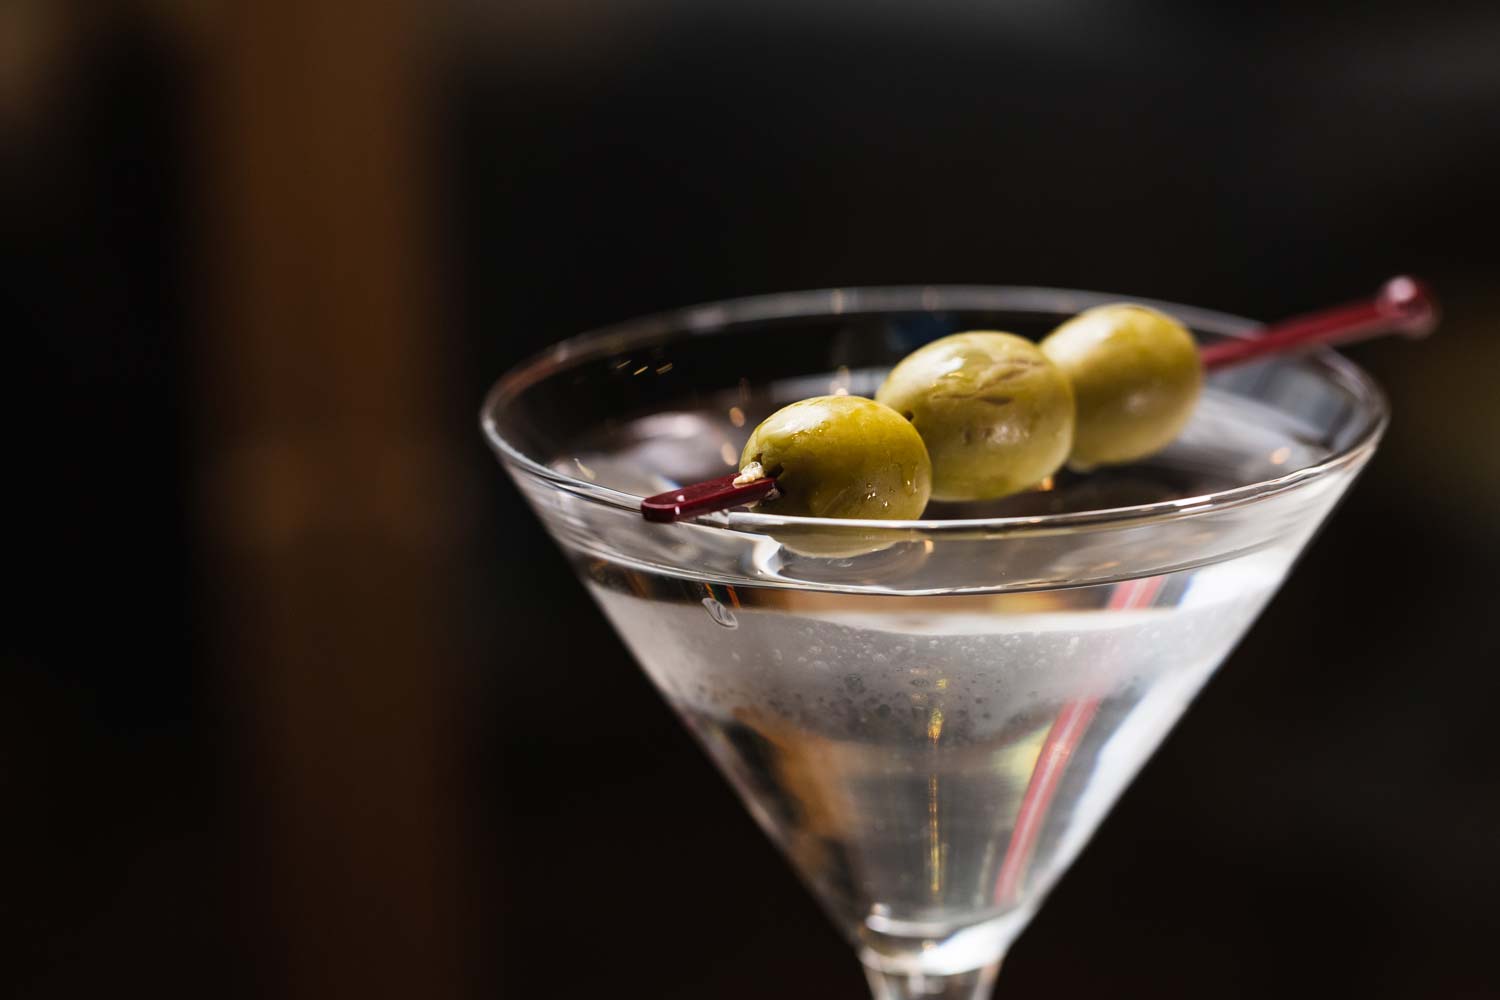 Martini served